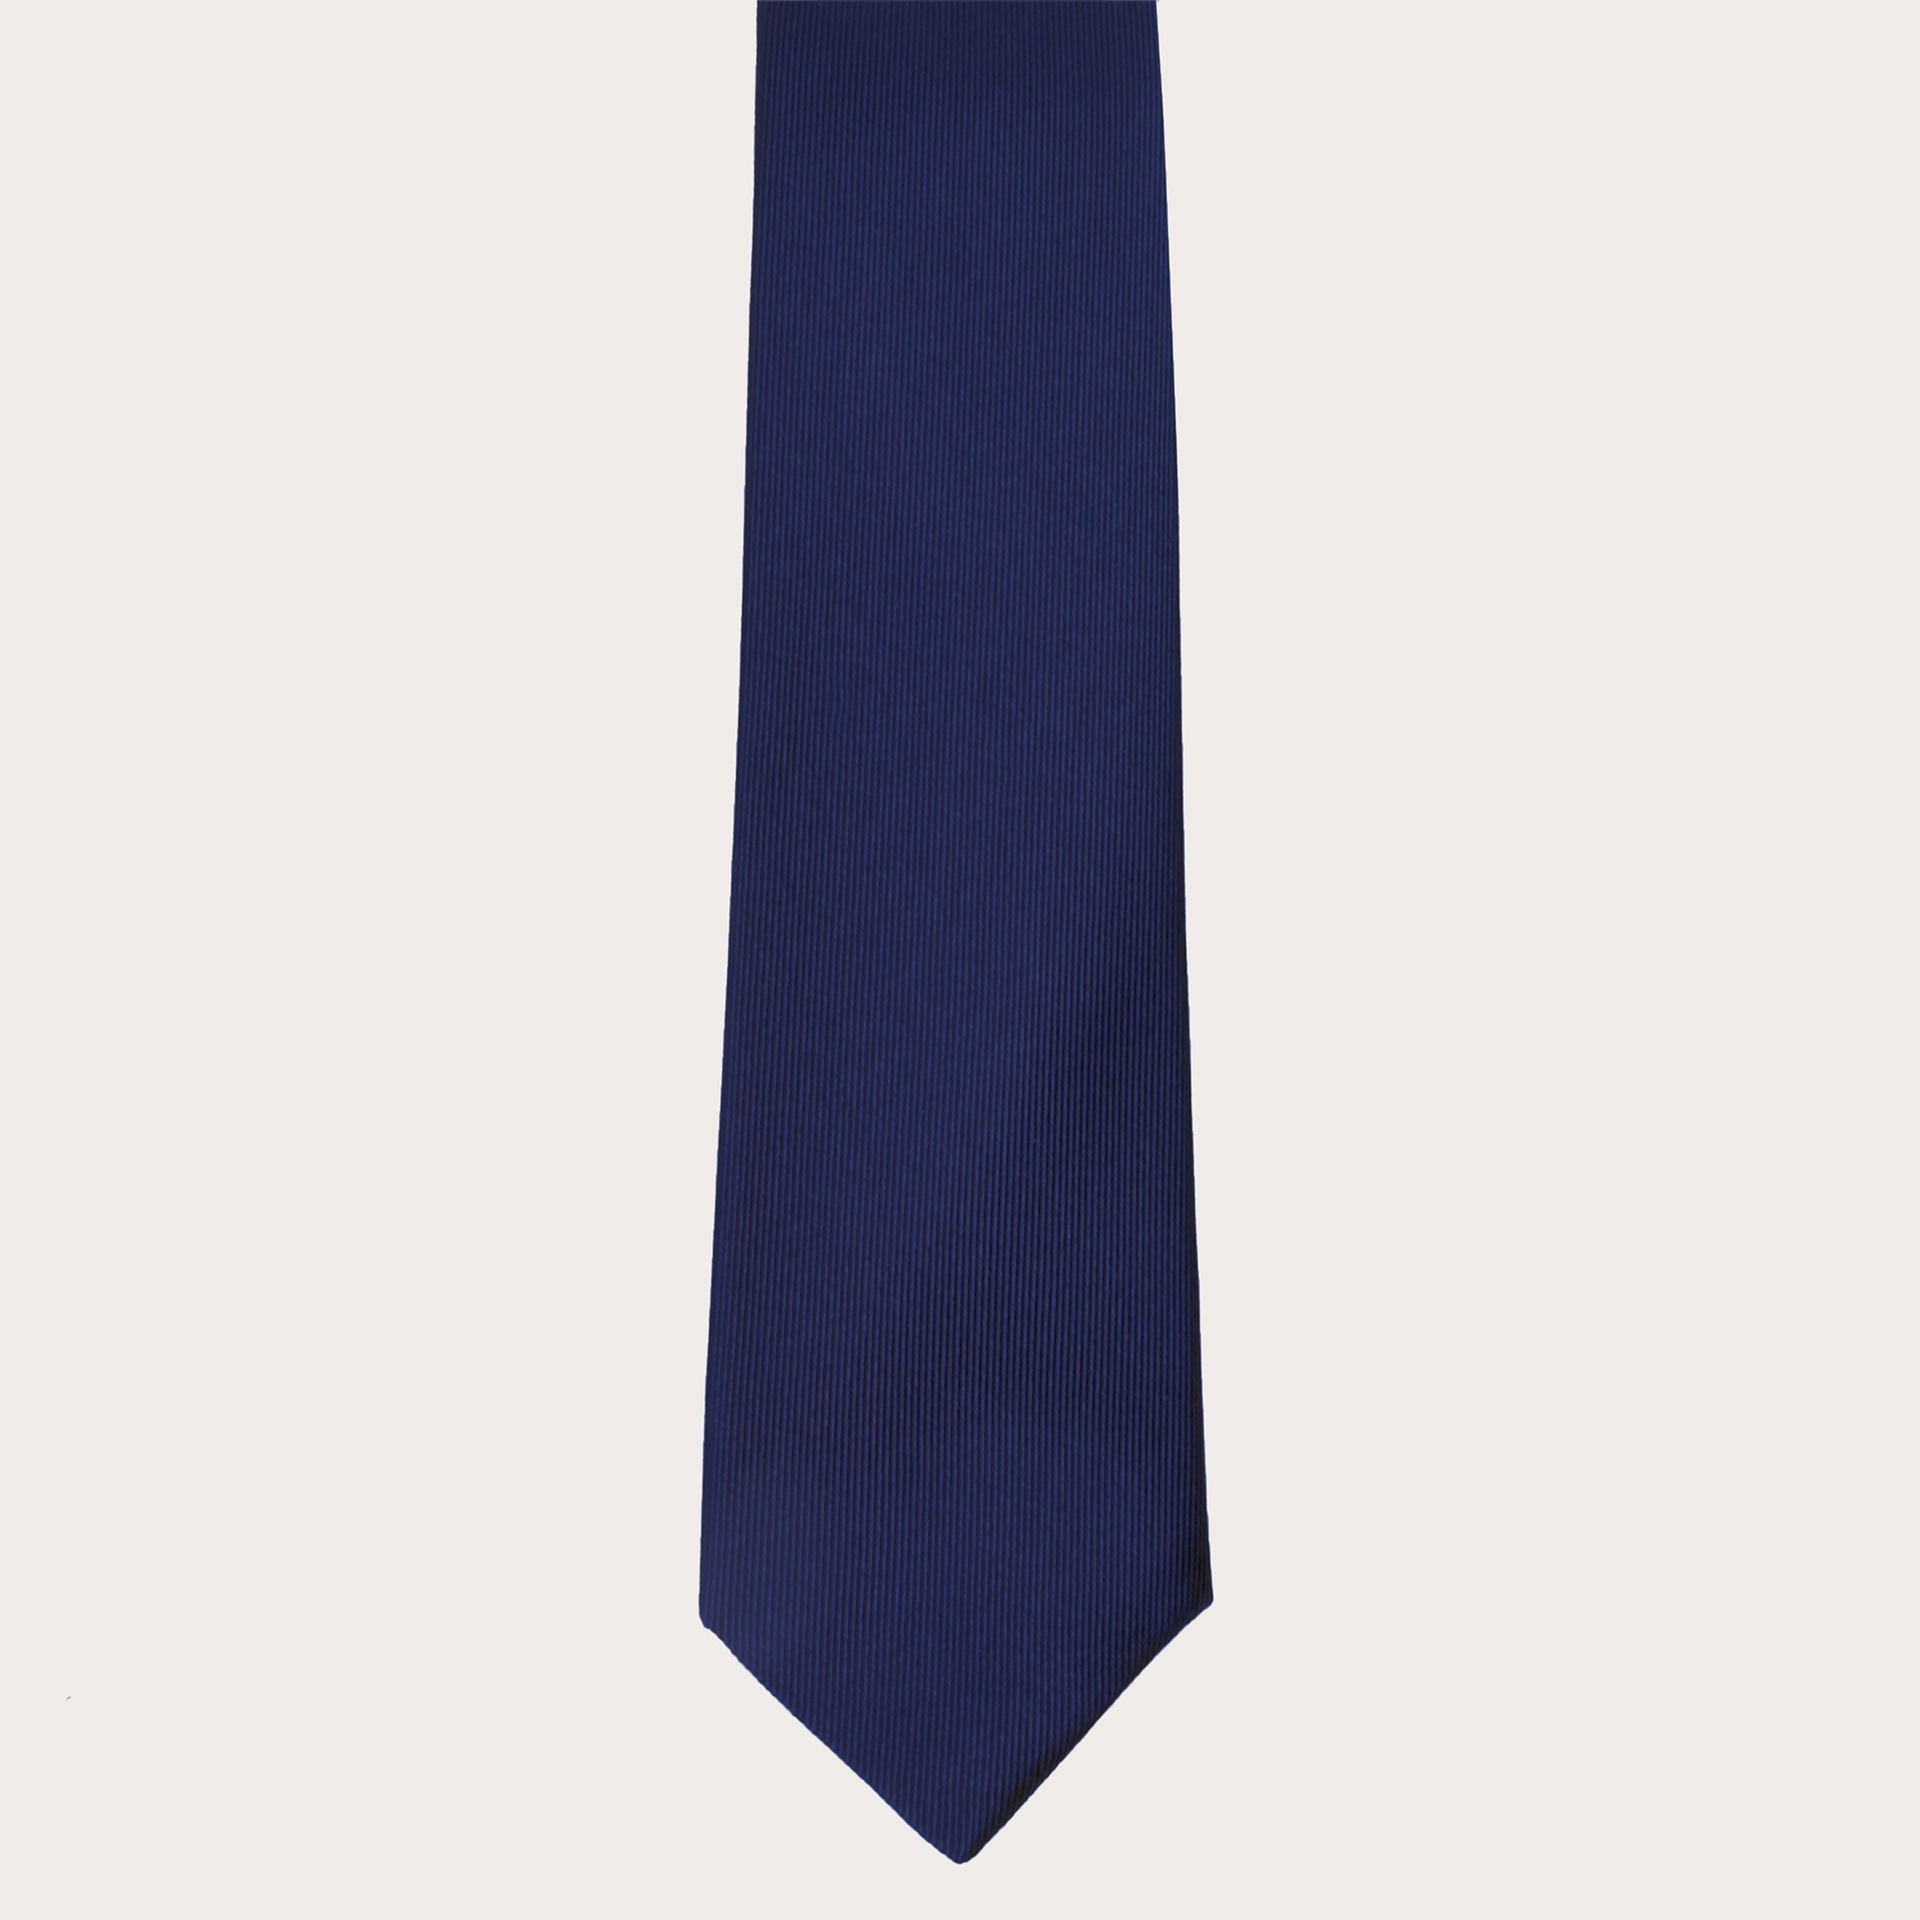 Cravate artisanale bleue en soie